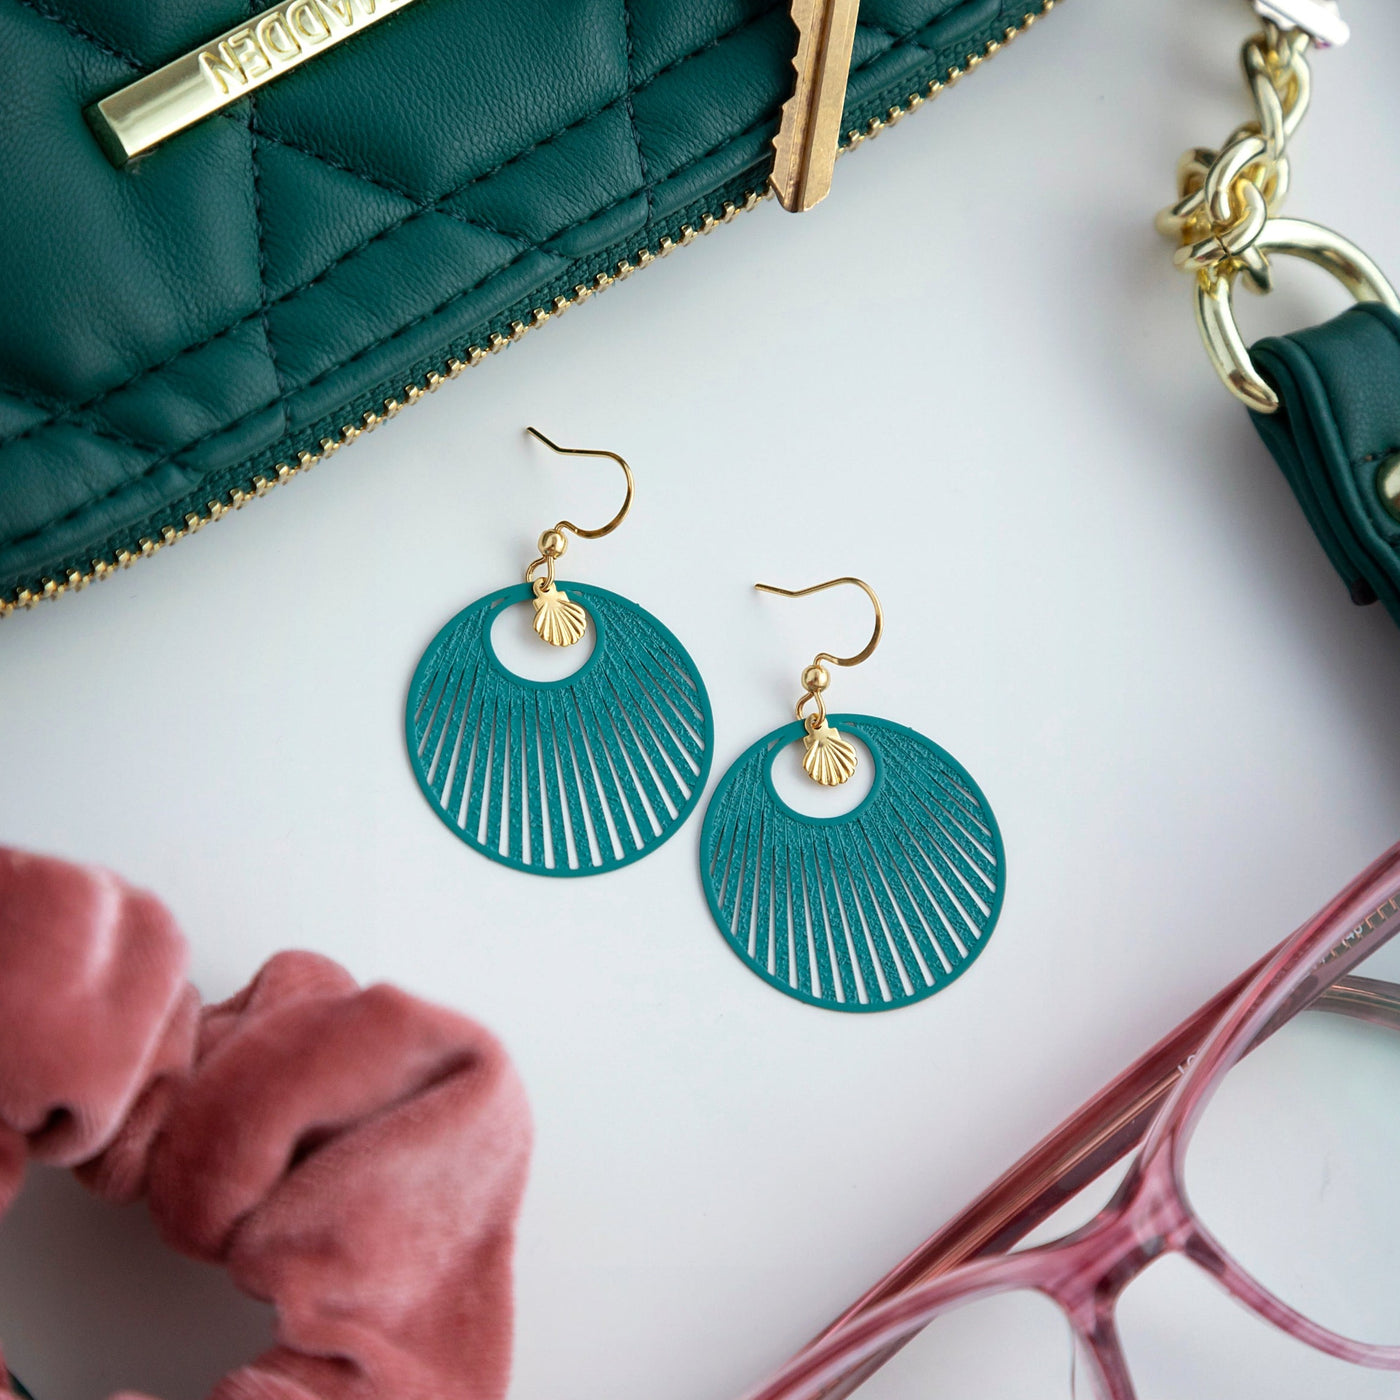 Nina turquoise earrings